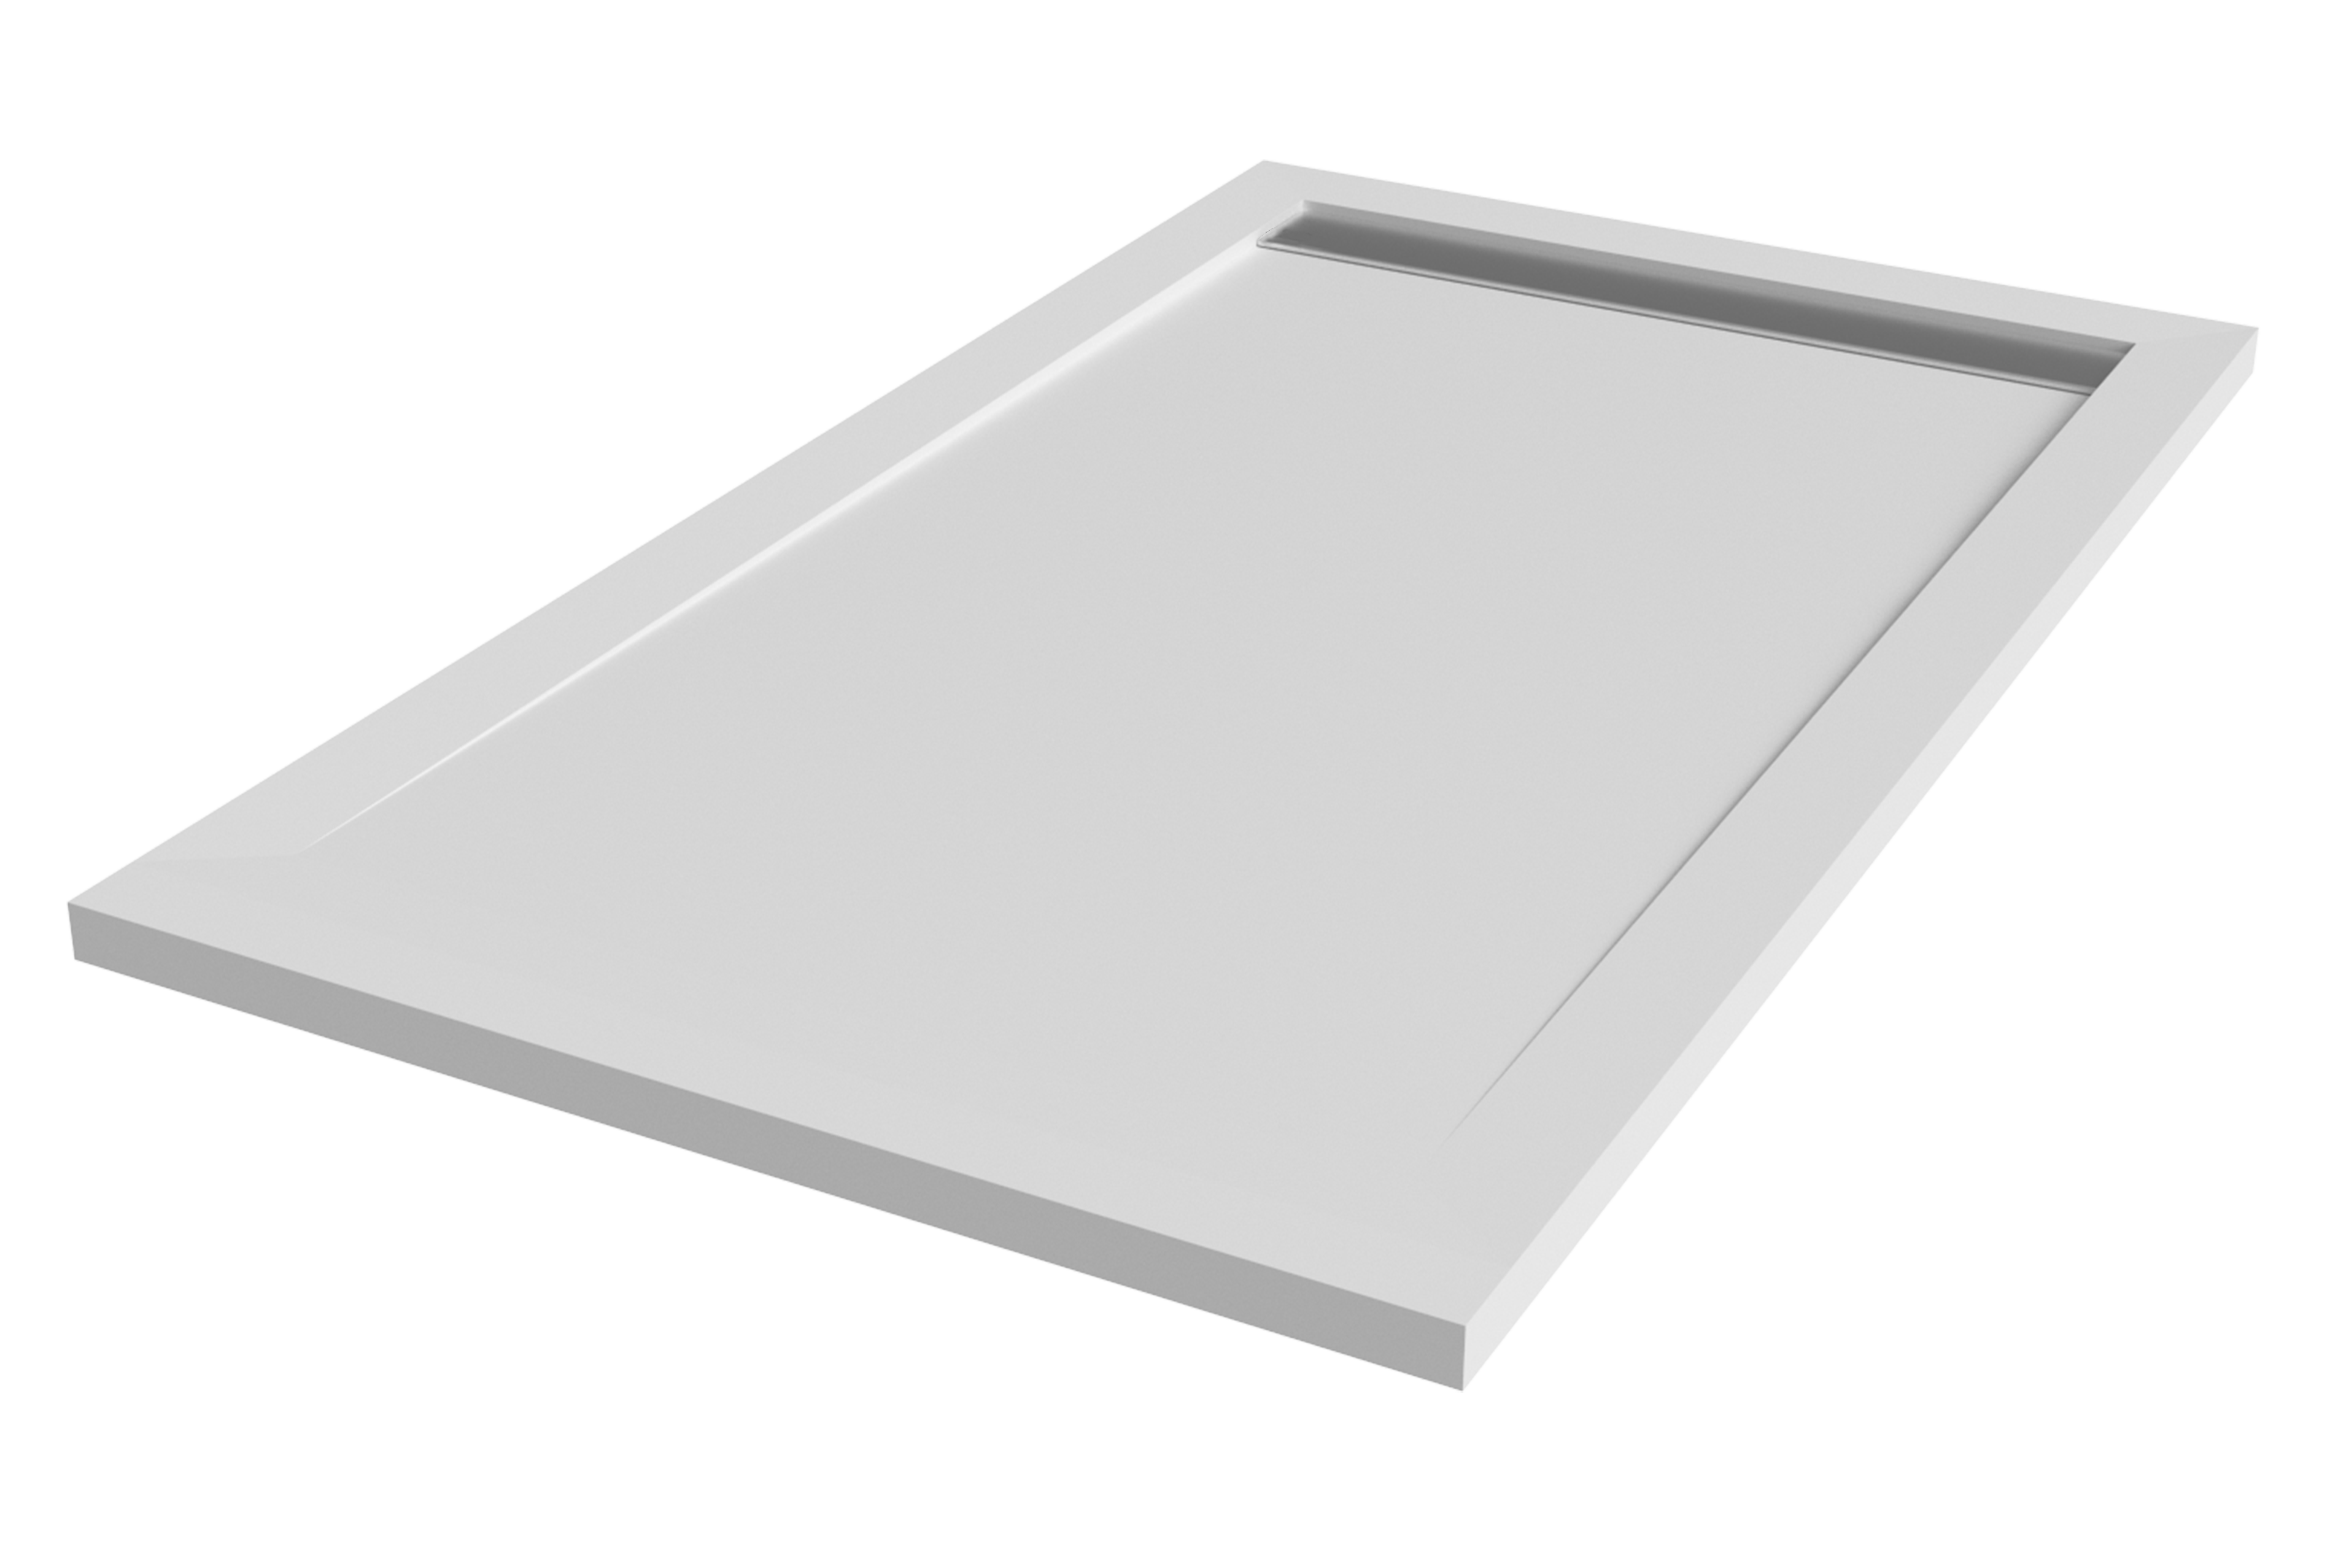 Plato de ducha kaliso 140x90 cm blanco